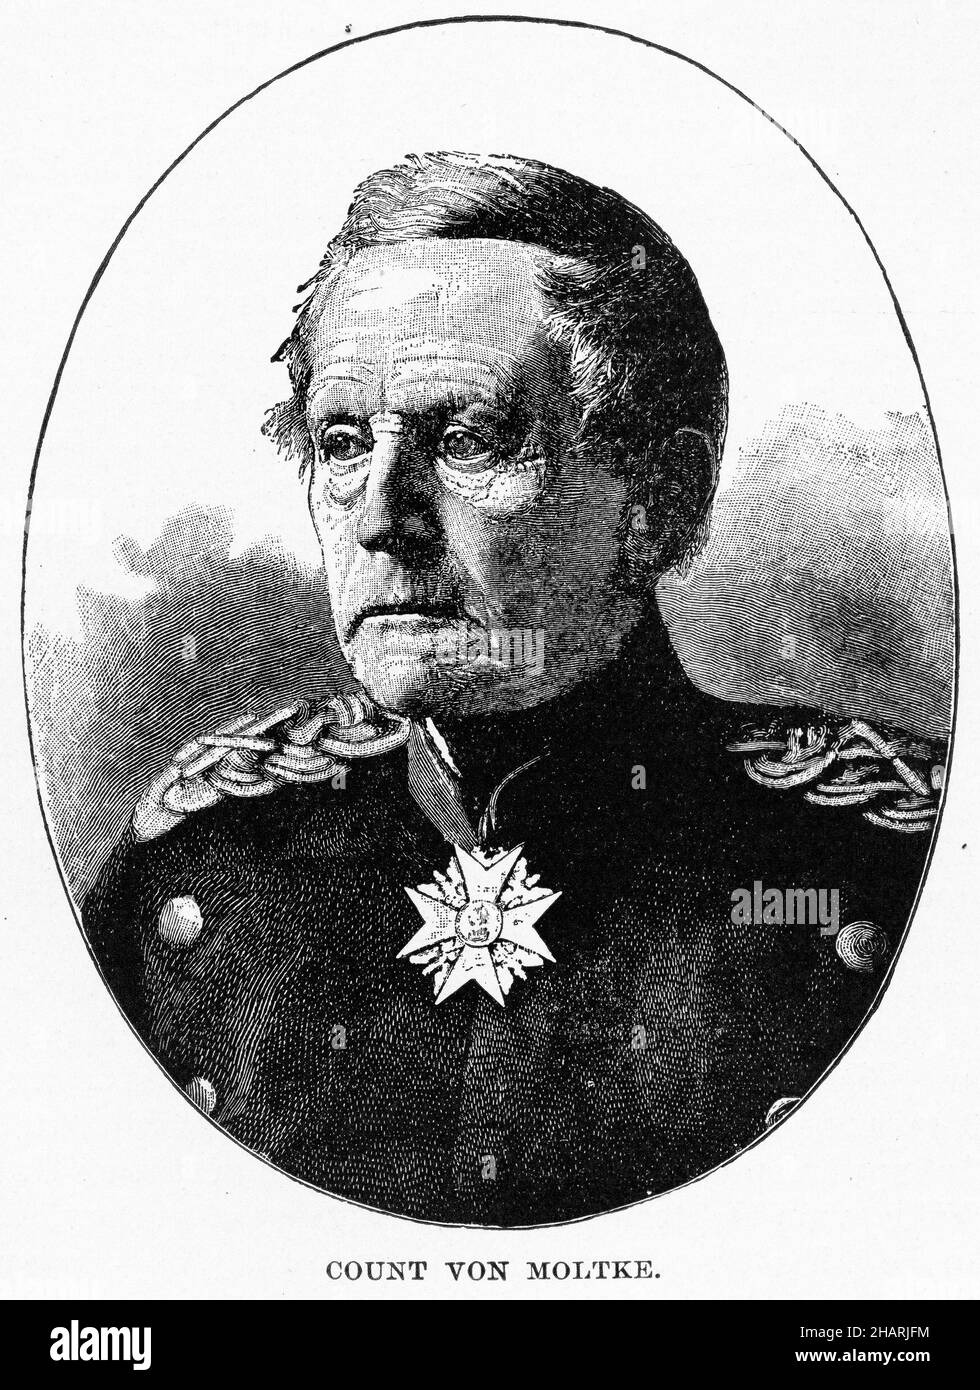 Eingraviertes Porträt von Helmuth Karl Bernhard Graf von Moltke ( 1800 – 1891) Preußischer Feldmarschall und des Stabschefs der preußischen Armee für dreißig Jahre. Auch bekannt als Moltke der Ältere. Stockfoto